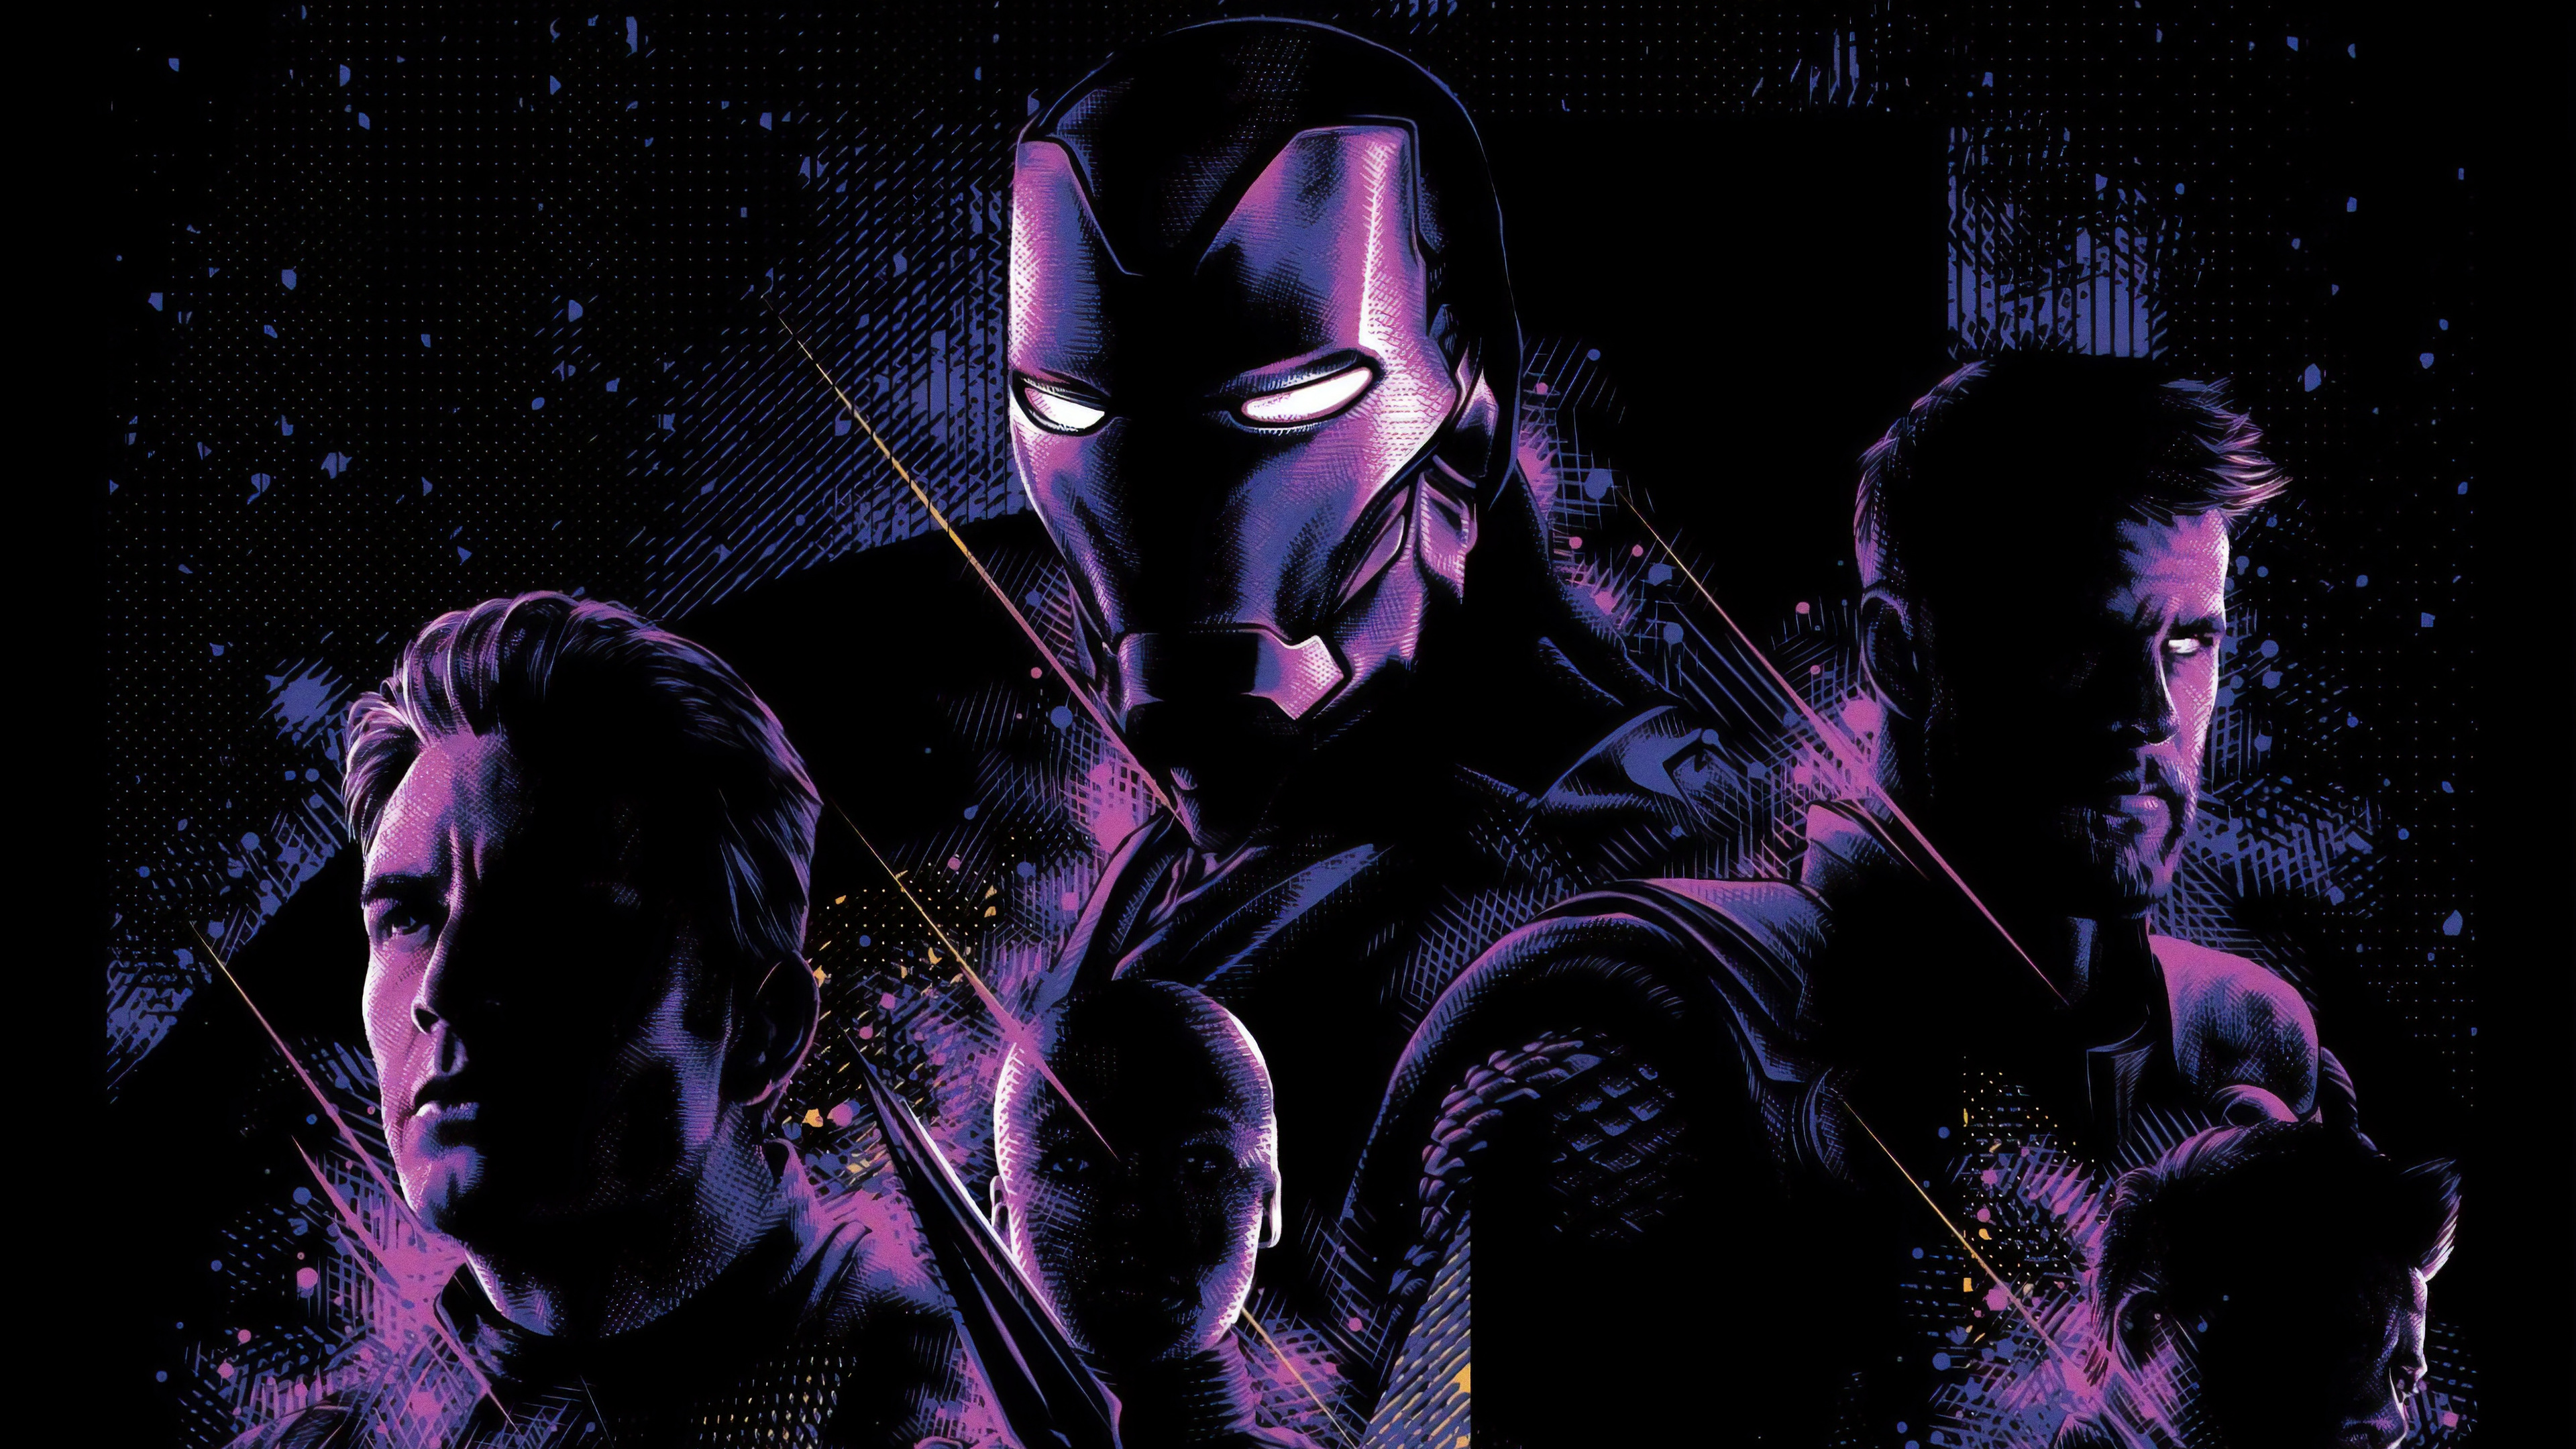 Avengers Endgame New Poster 4k - Iron Man Captain America Thor Endgame - HD Wallpaper 